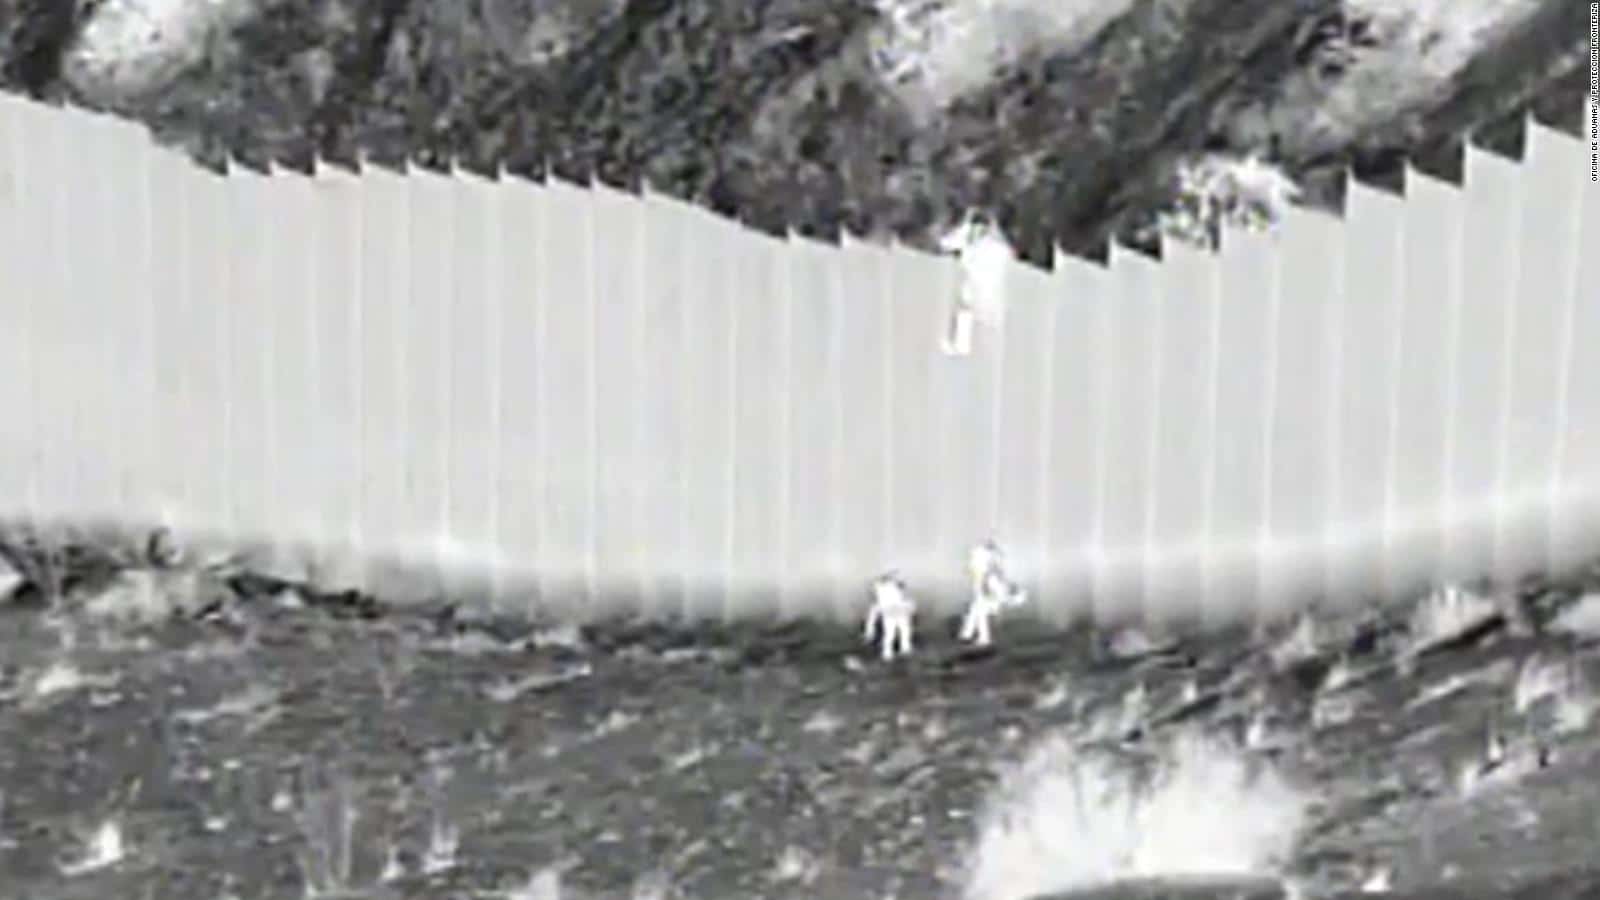 #VIDEO La impresionante forma como una migrante venezolana cruzó el muro fronterizo hacia EEUU